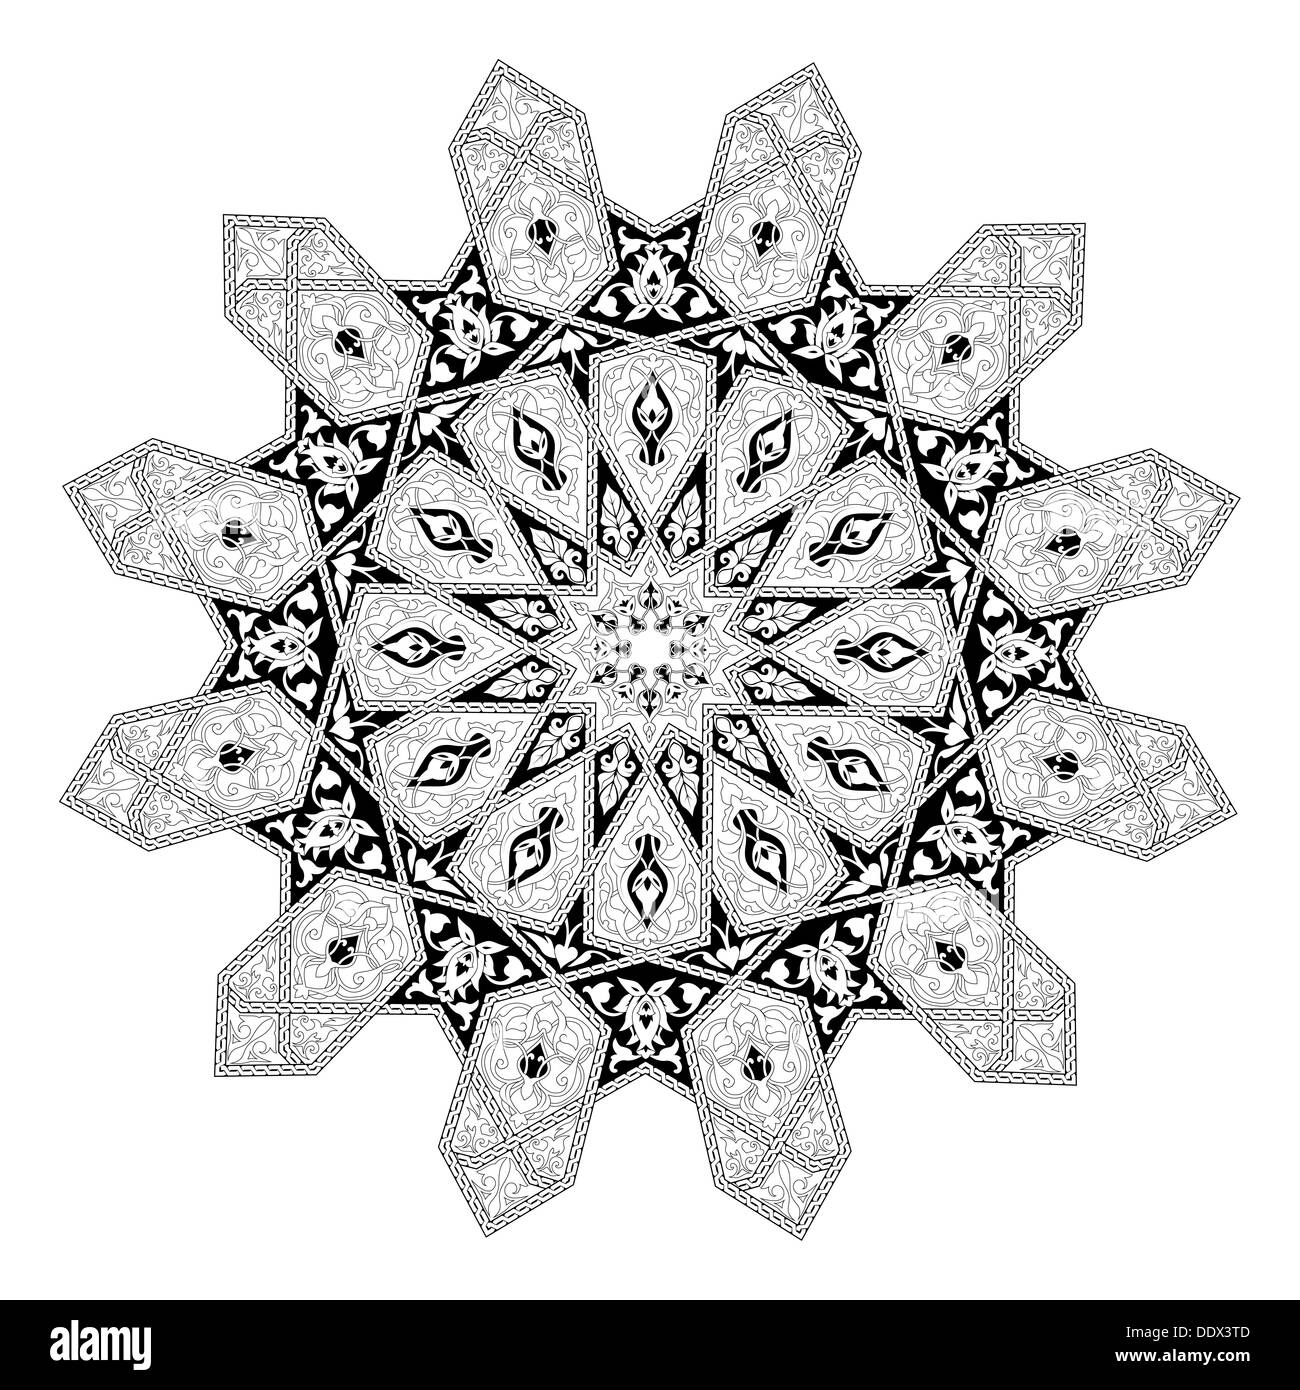 Schwarz / weiß arabischen Nahen Osten Blumenmuster Motiv, basierend auf arabisches ornament Stockfoto